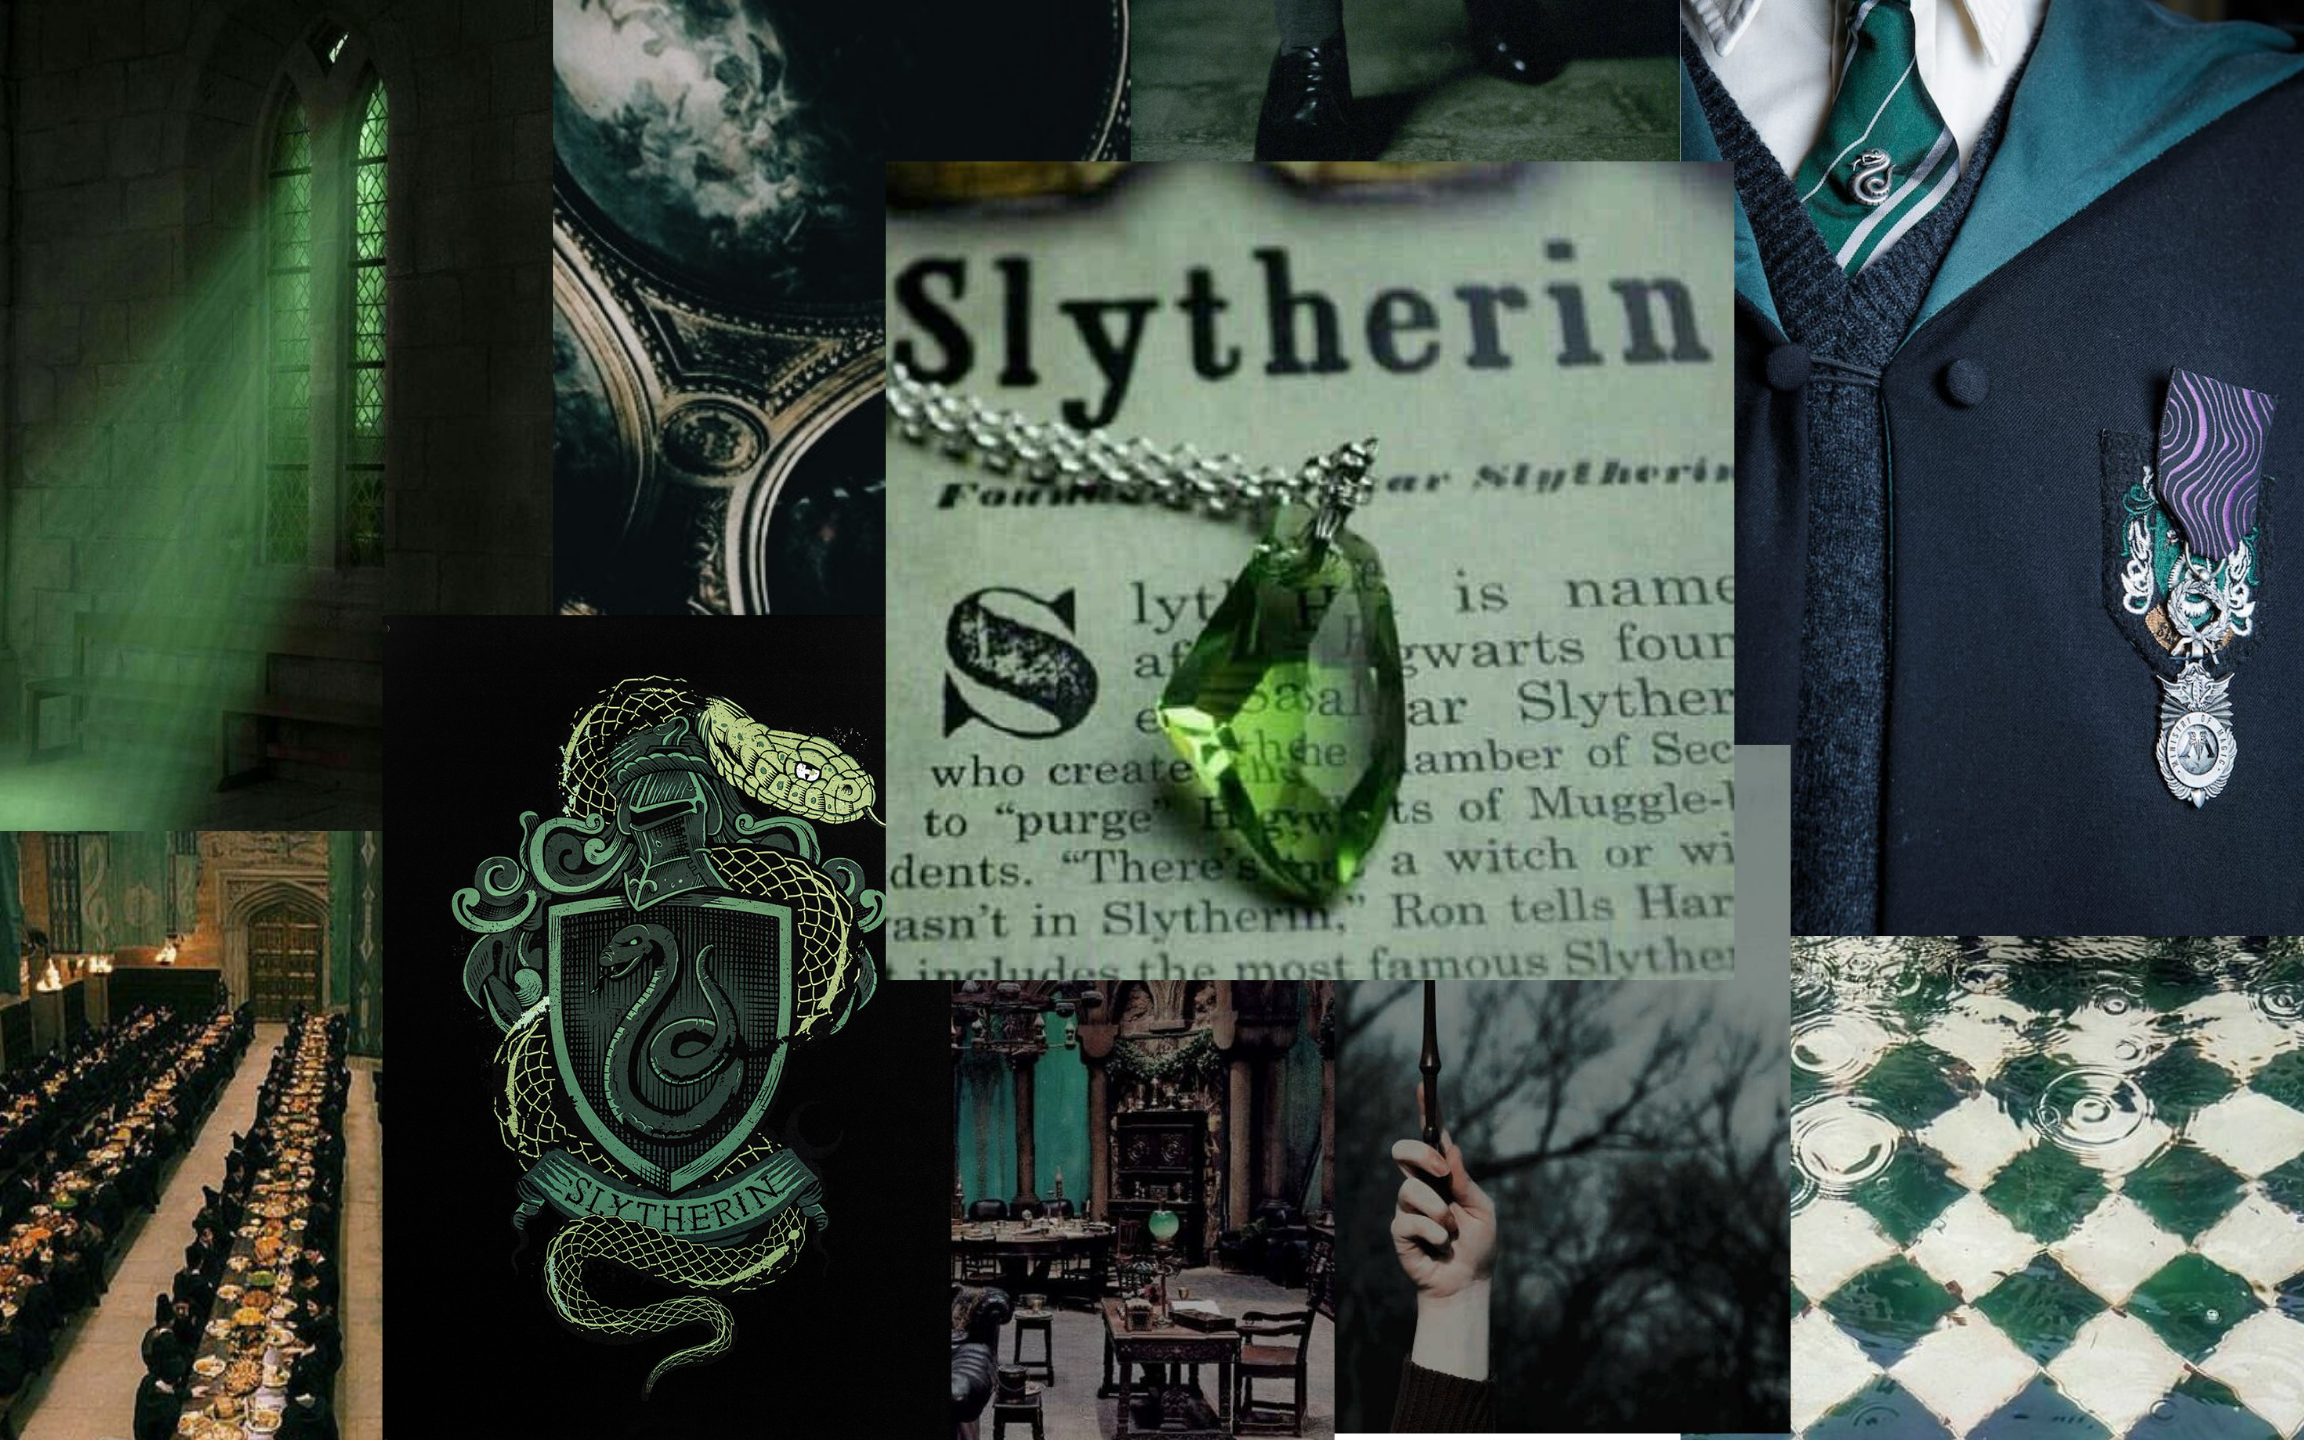 Slytherin laptop wallpaper. Harry Potter. Slytherin wallpaper, Slytherin, Harry potter wallpaper